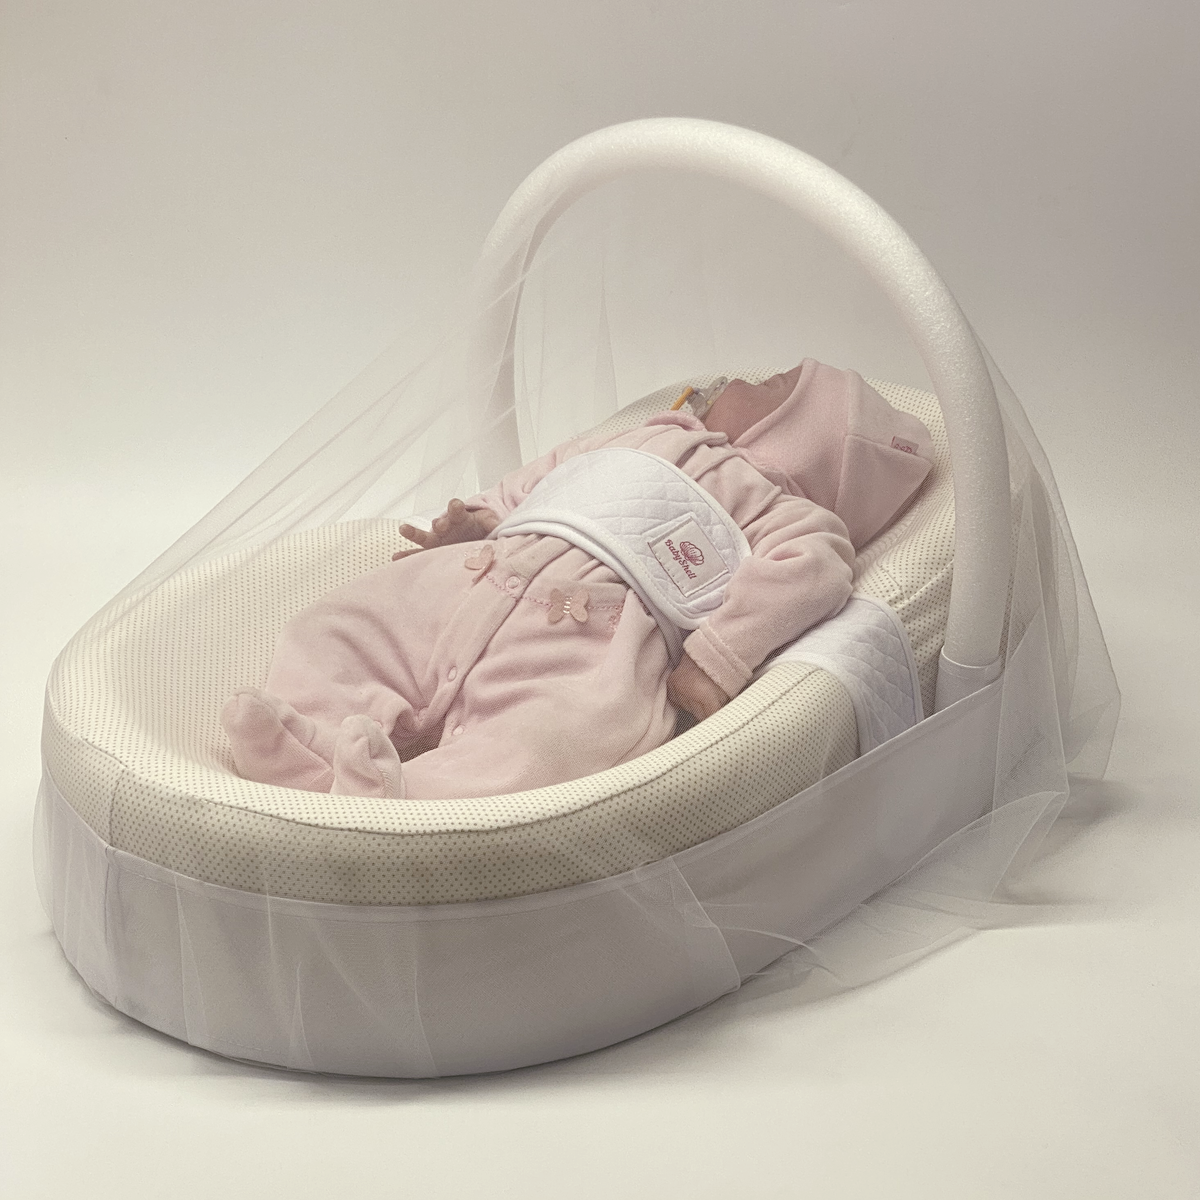 Антимоскитный балдахин на кокон для новорождённых универсальный Farla Nets